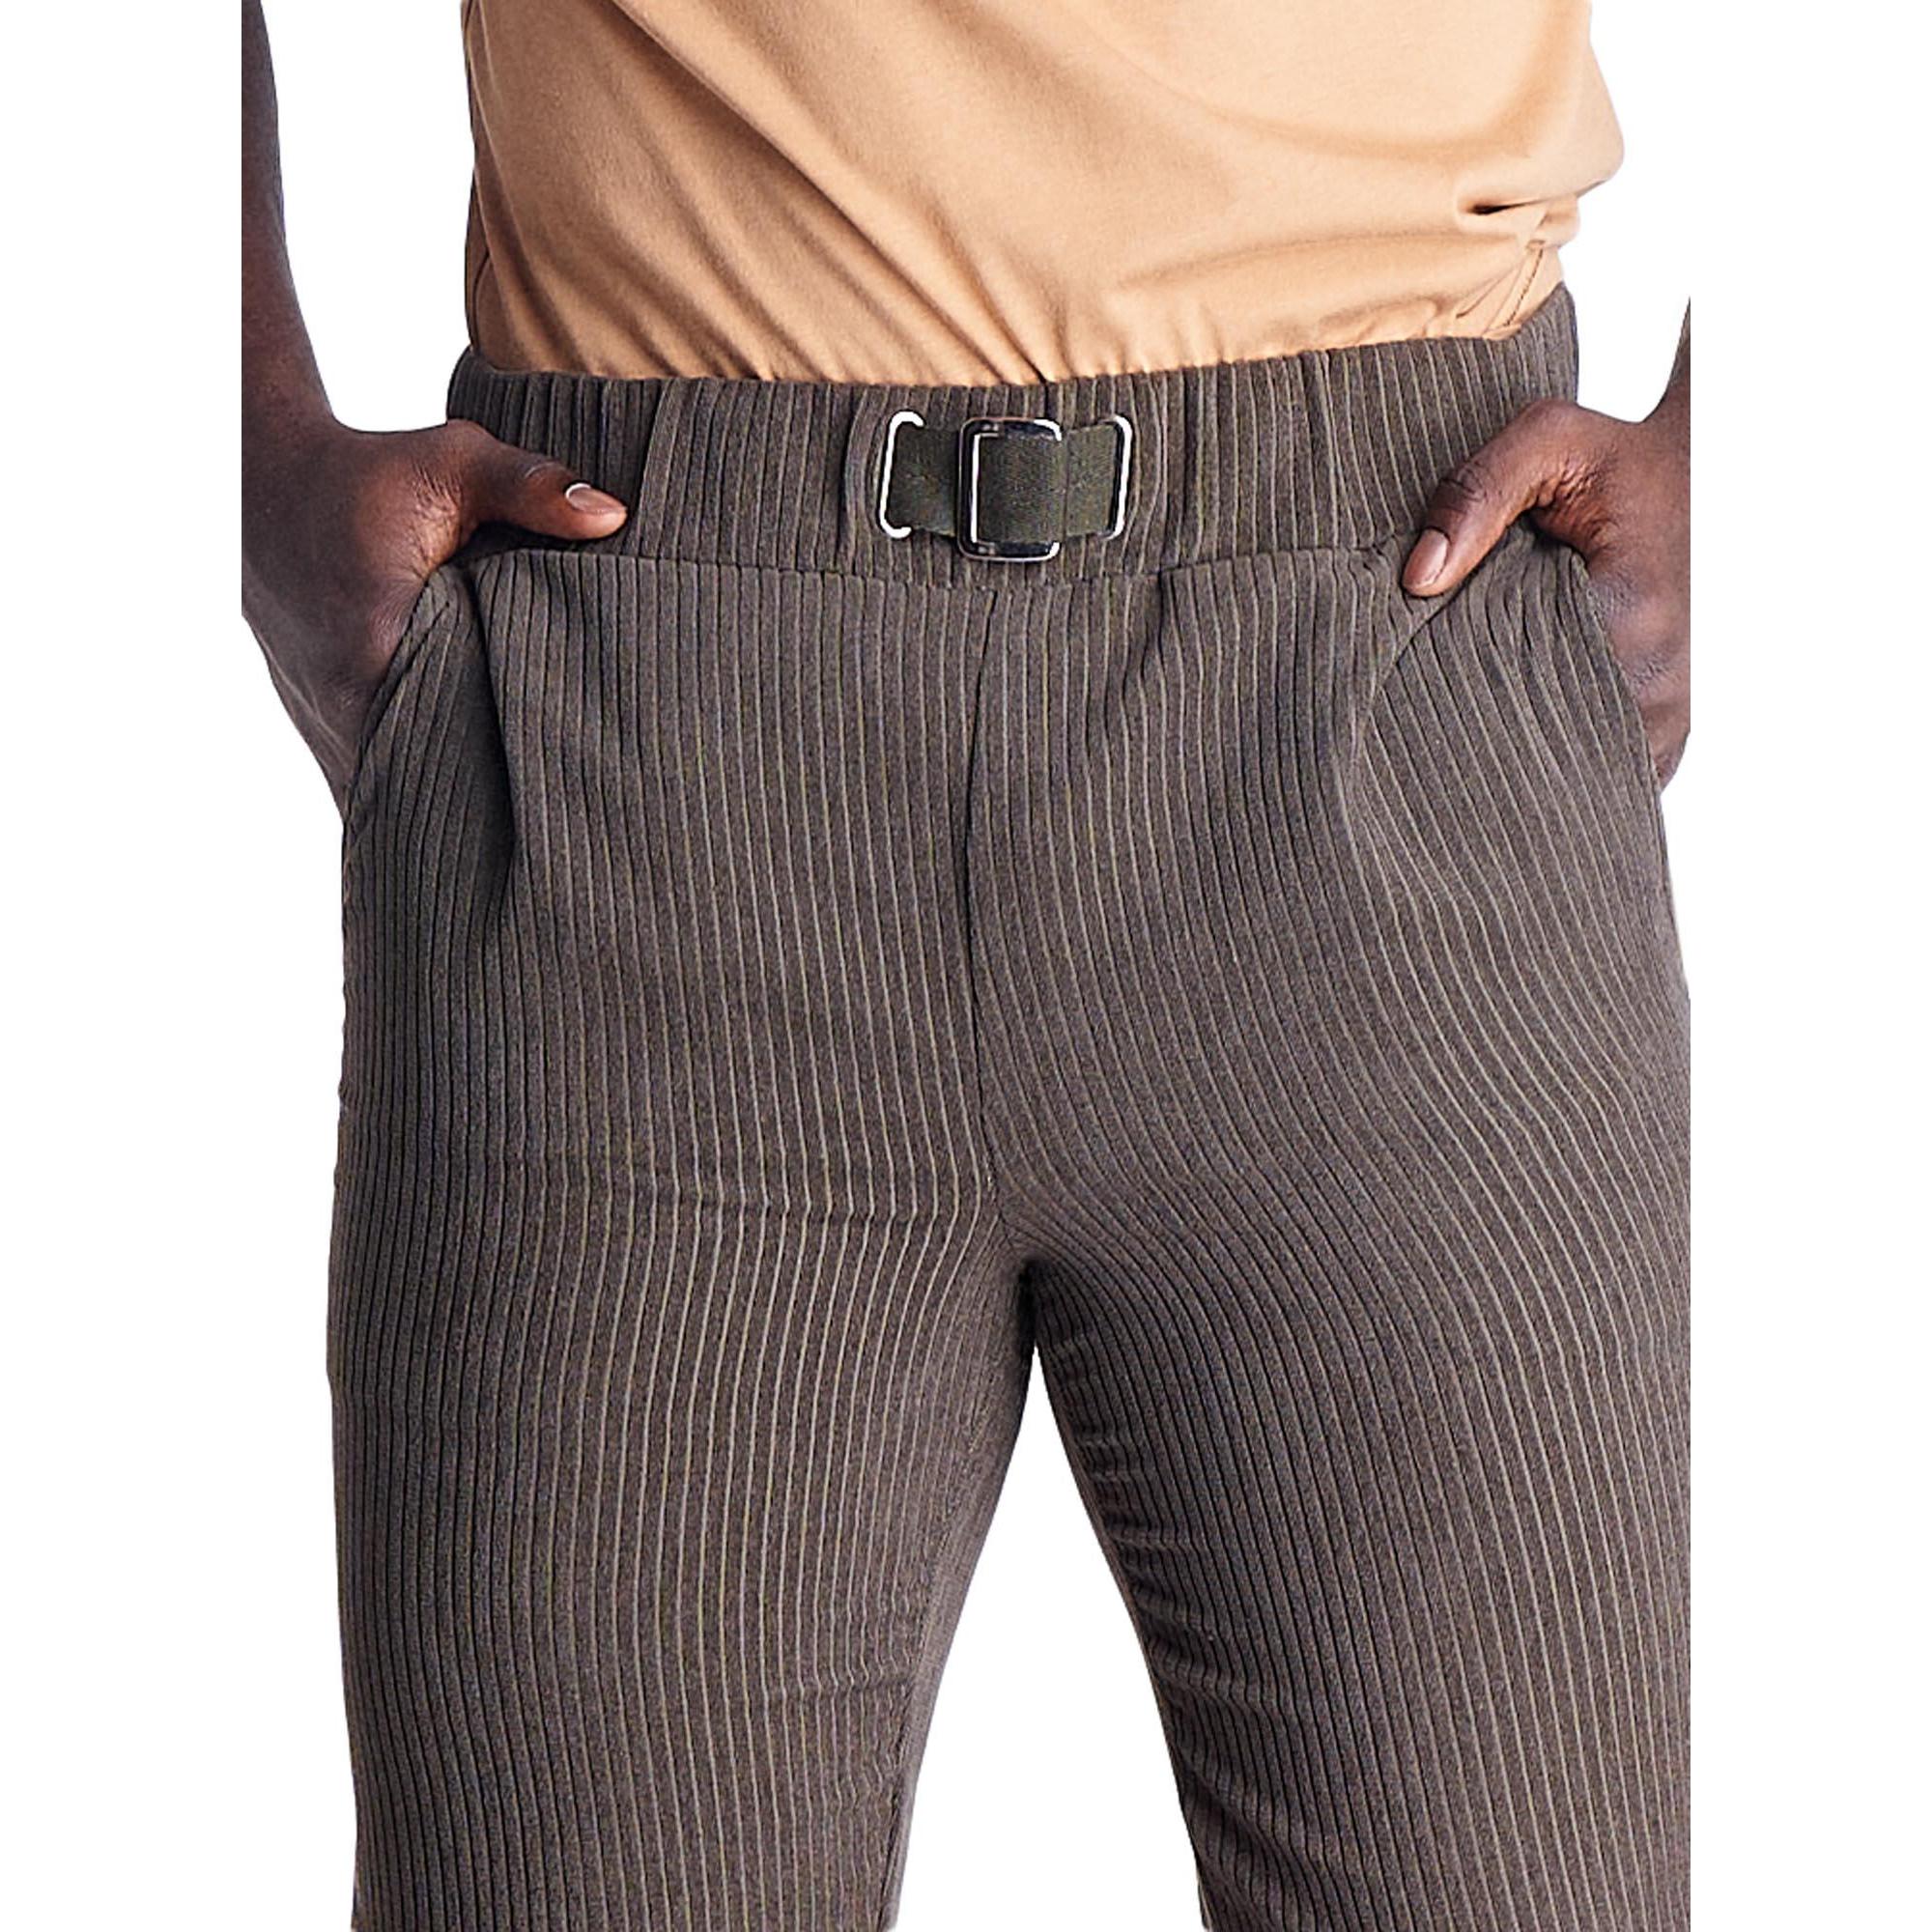 Pantalón de hombre con pana elástica Neutros